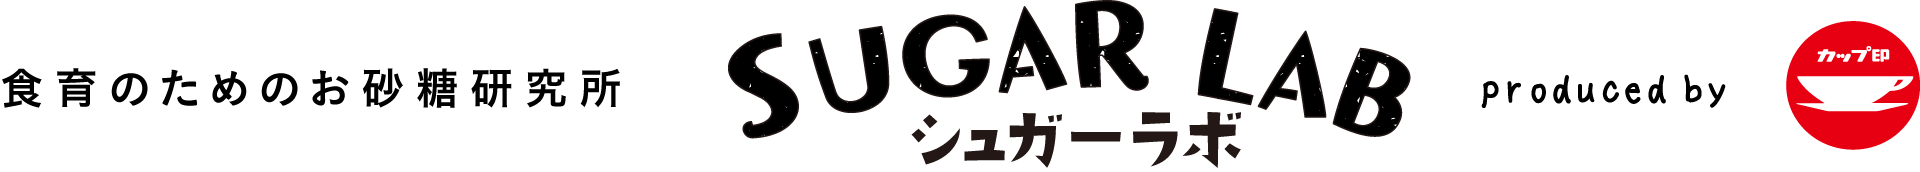 食育のためのお砂糖研究所 SUGAR LAB / シュガーラボ produced by カップ印